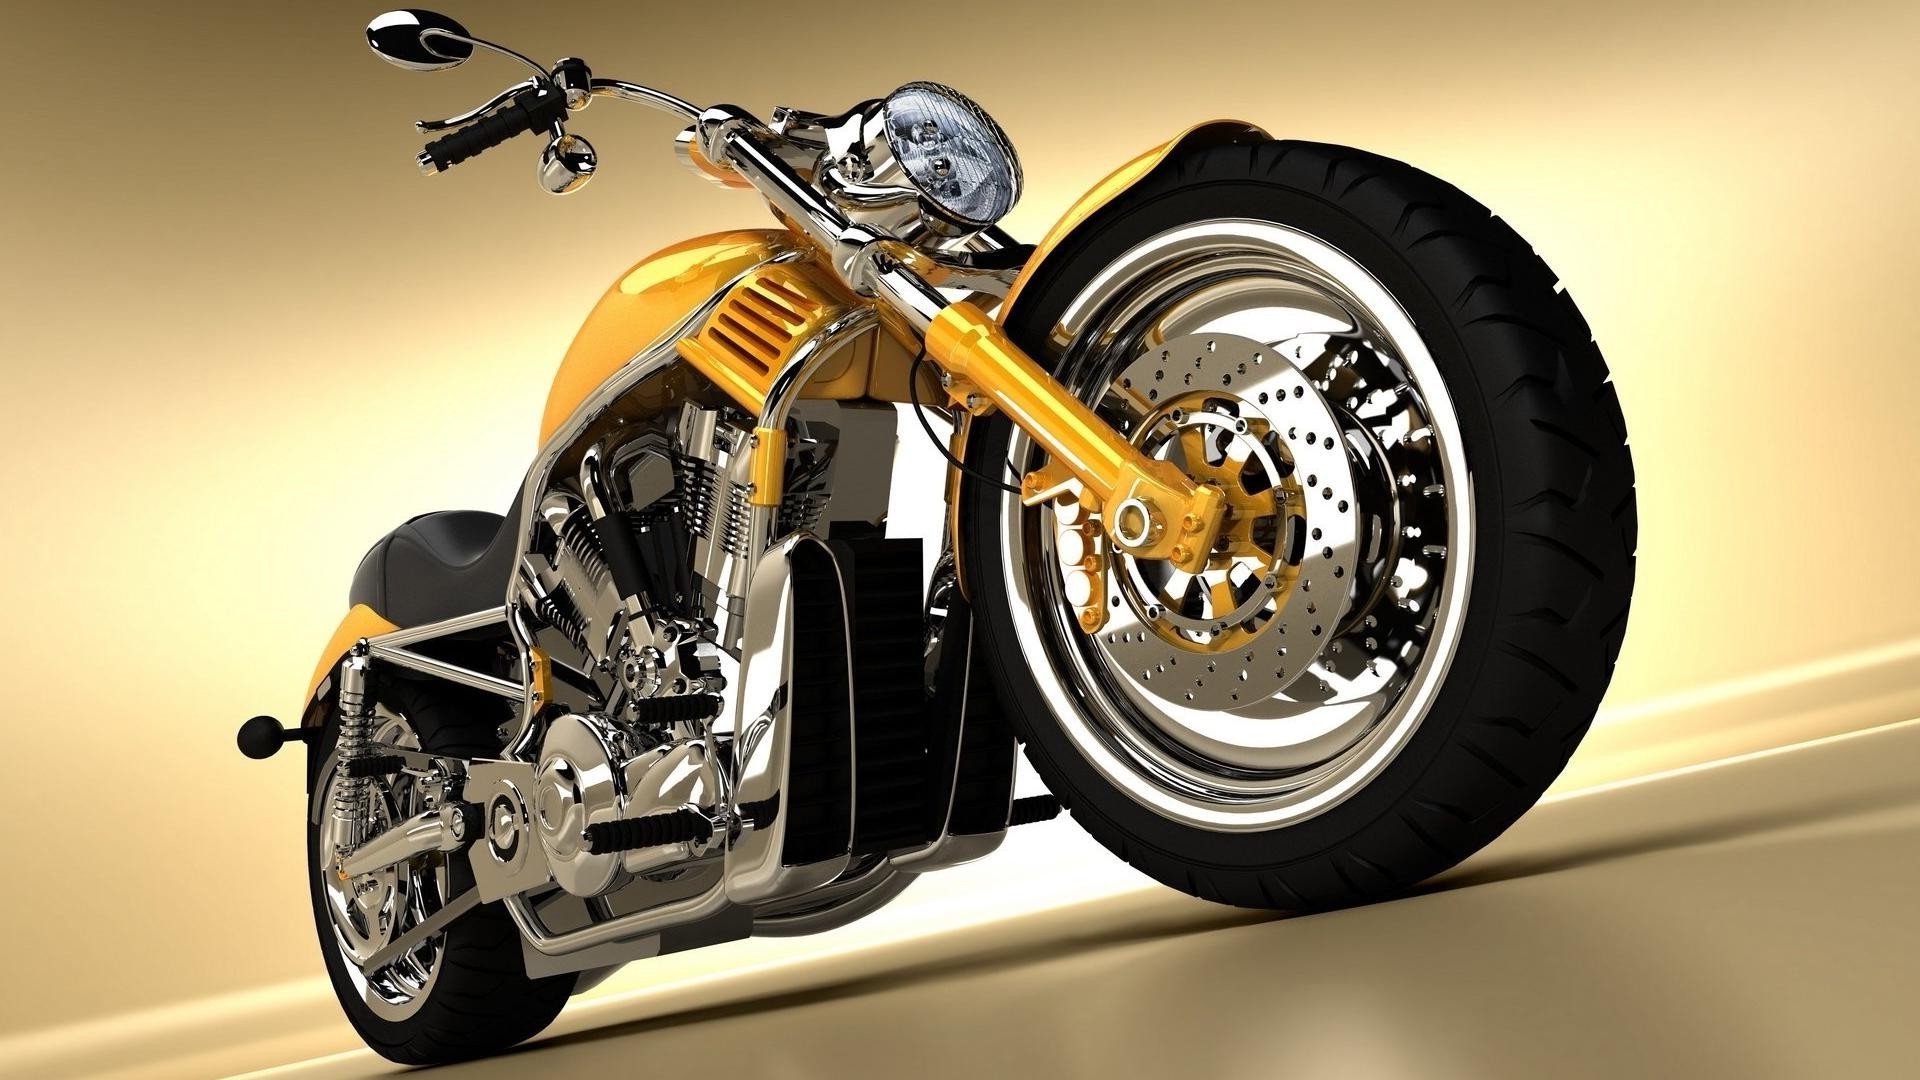 классические мотоциклы колеса велосипед диск автомобиль автомобиль хром гонки быстро мощность машина мотоцикл автомобильная транспортная система двигатель технология скорость